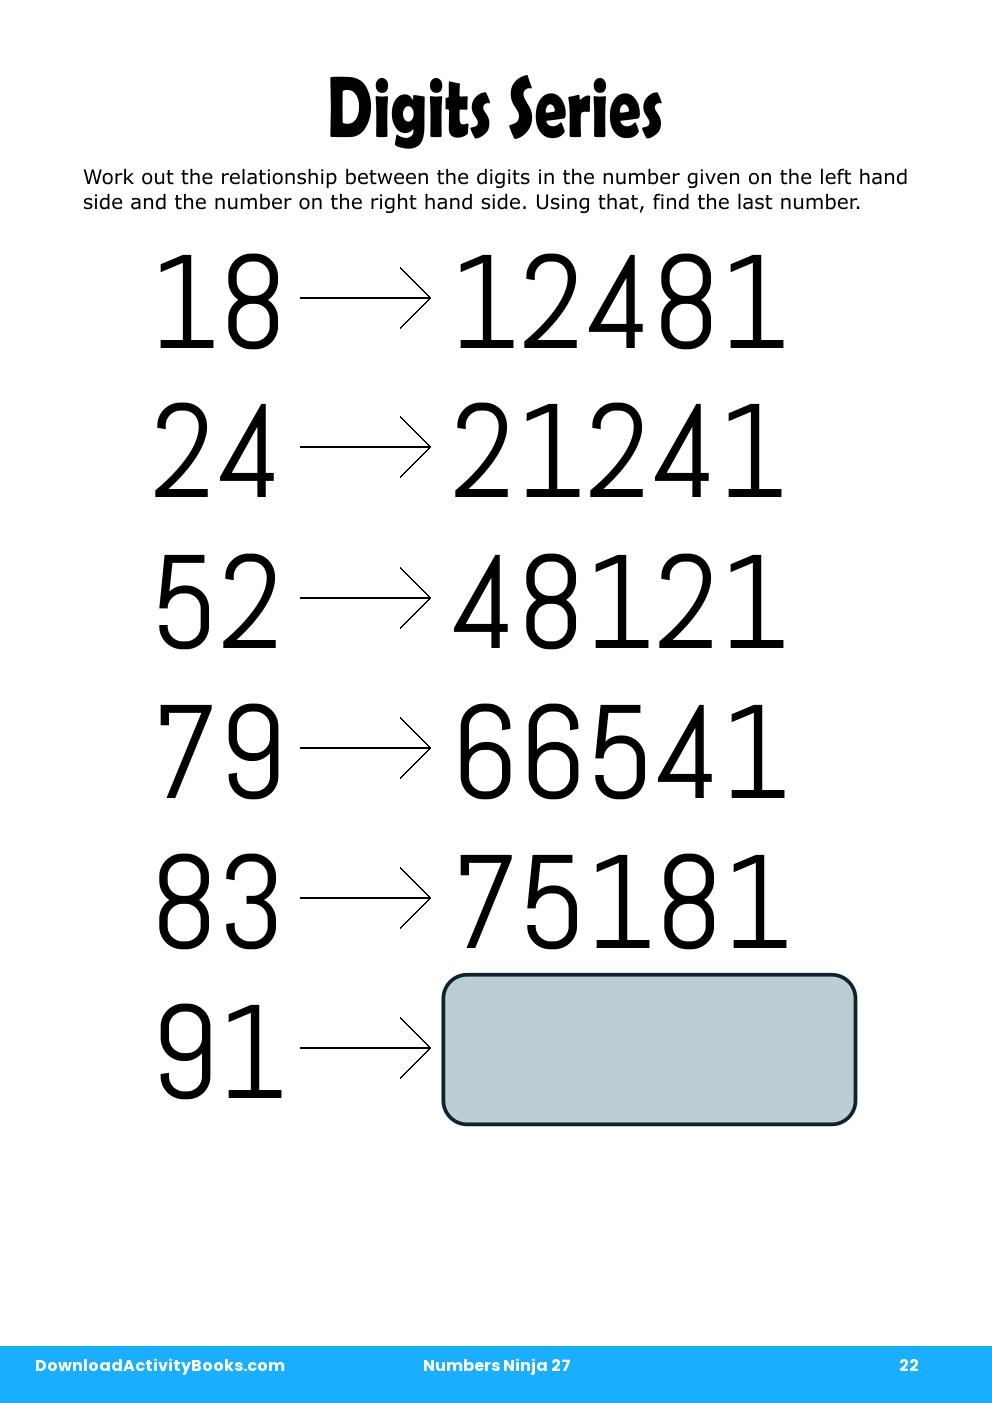 Digits Series in Numbers Ninja 27